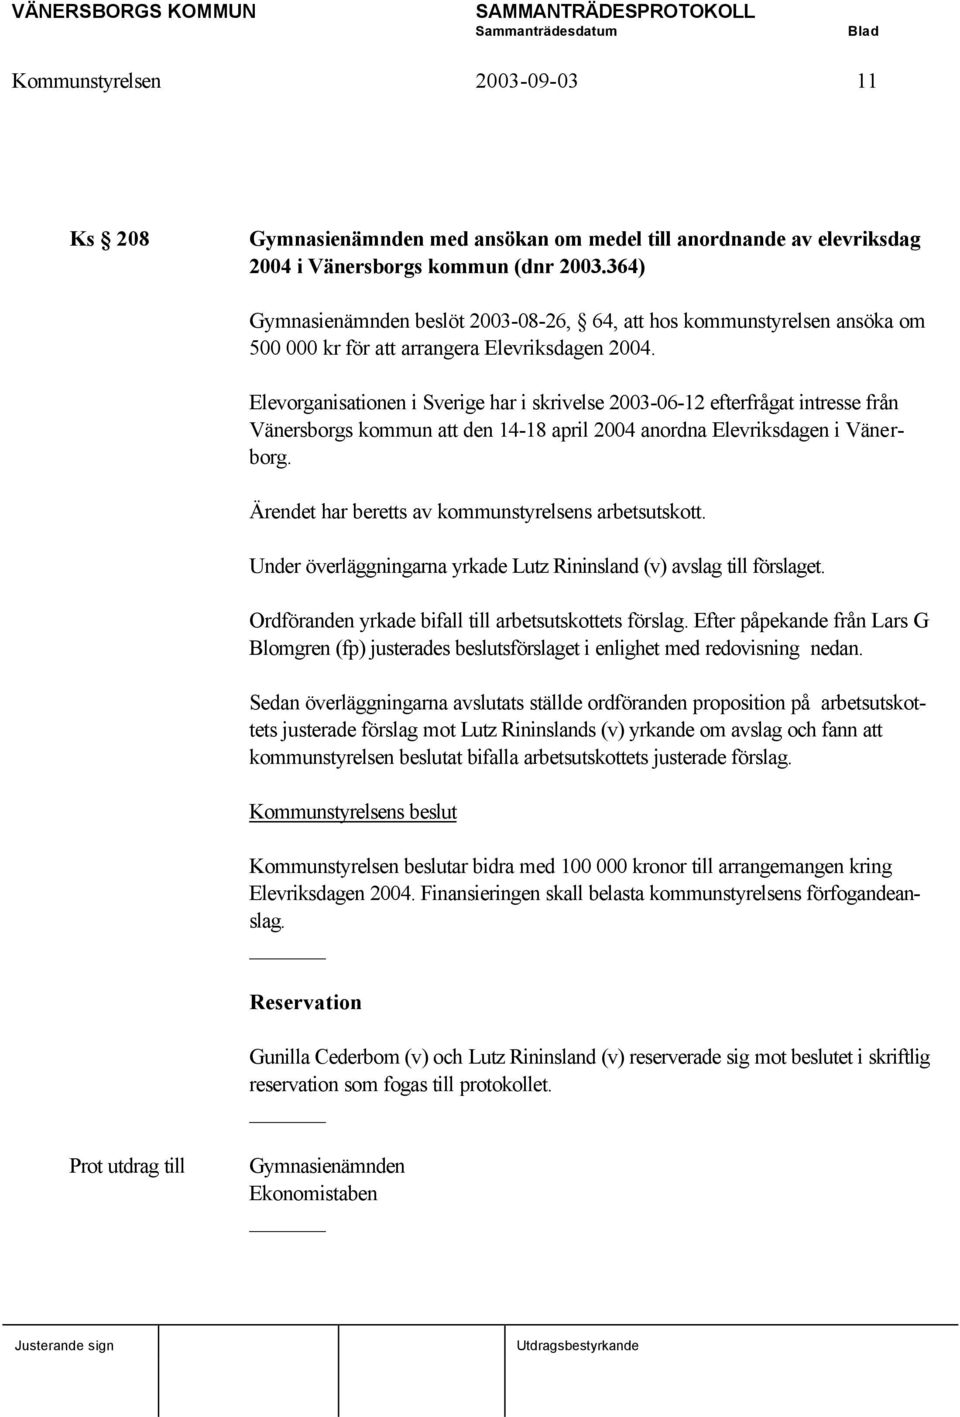 Elevorganisationen i Sverige har i skrivelse 2003-06-12 efterfrågat intresse från Vänersborgs kommun att den 14-18 april 2004 anordna Elevriksdagen i Vänerborg.